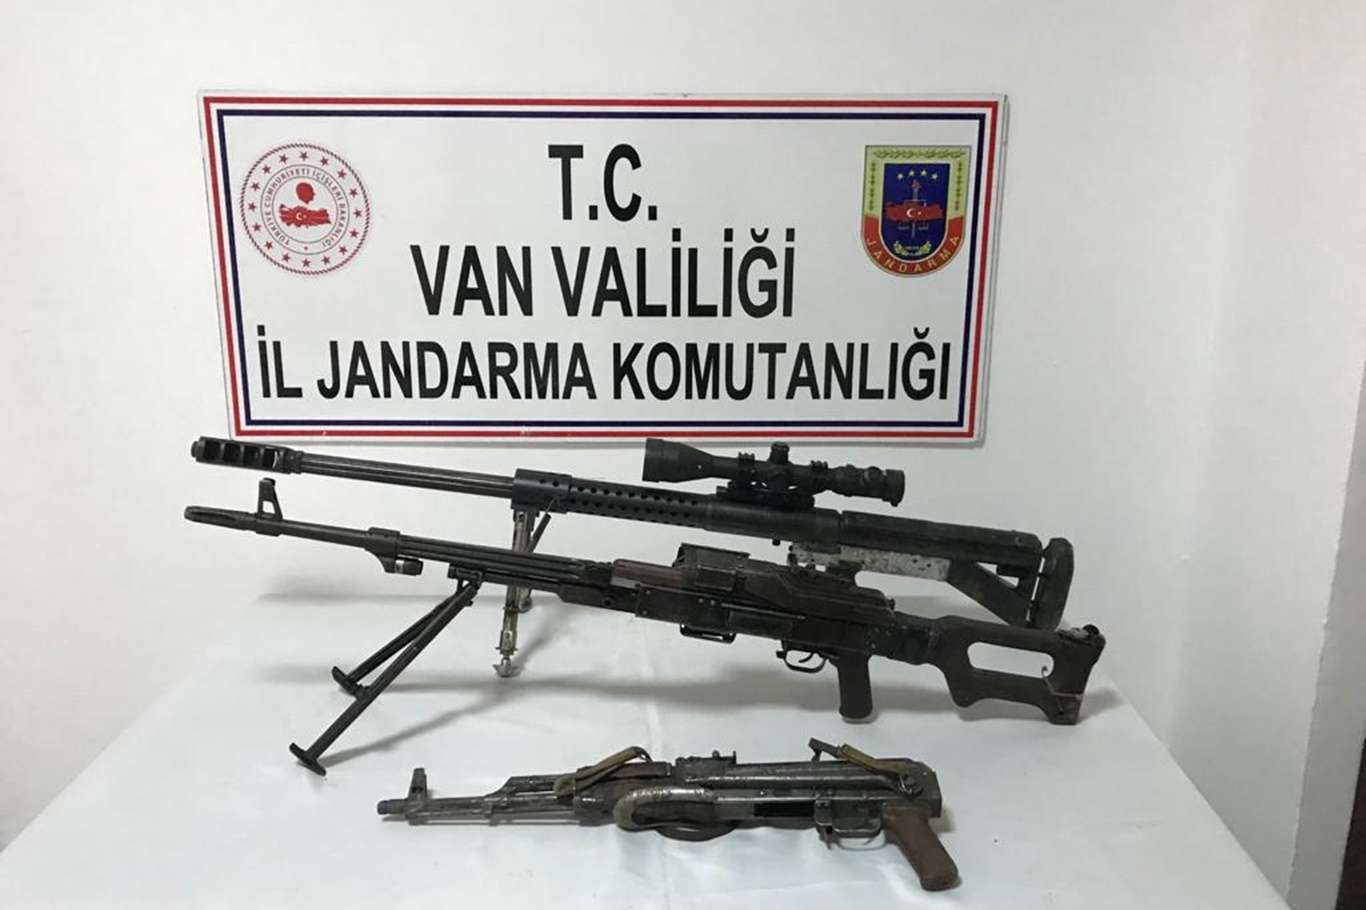 Van’da PKK’ye yönelik operasyonlarda patlayıcı yapımında kullanılan malzeme ele geçirildi